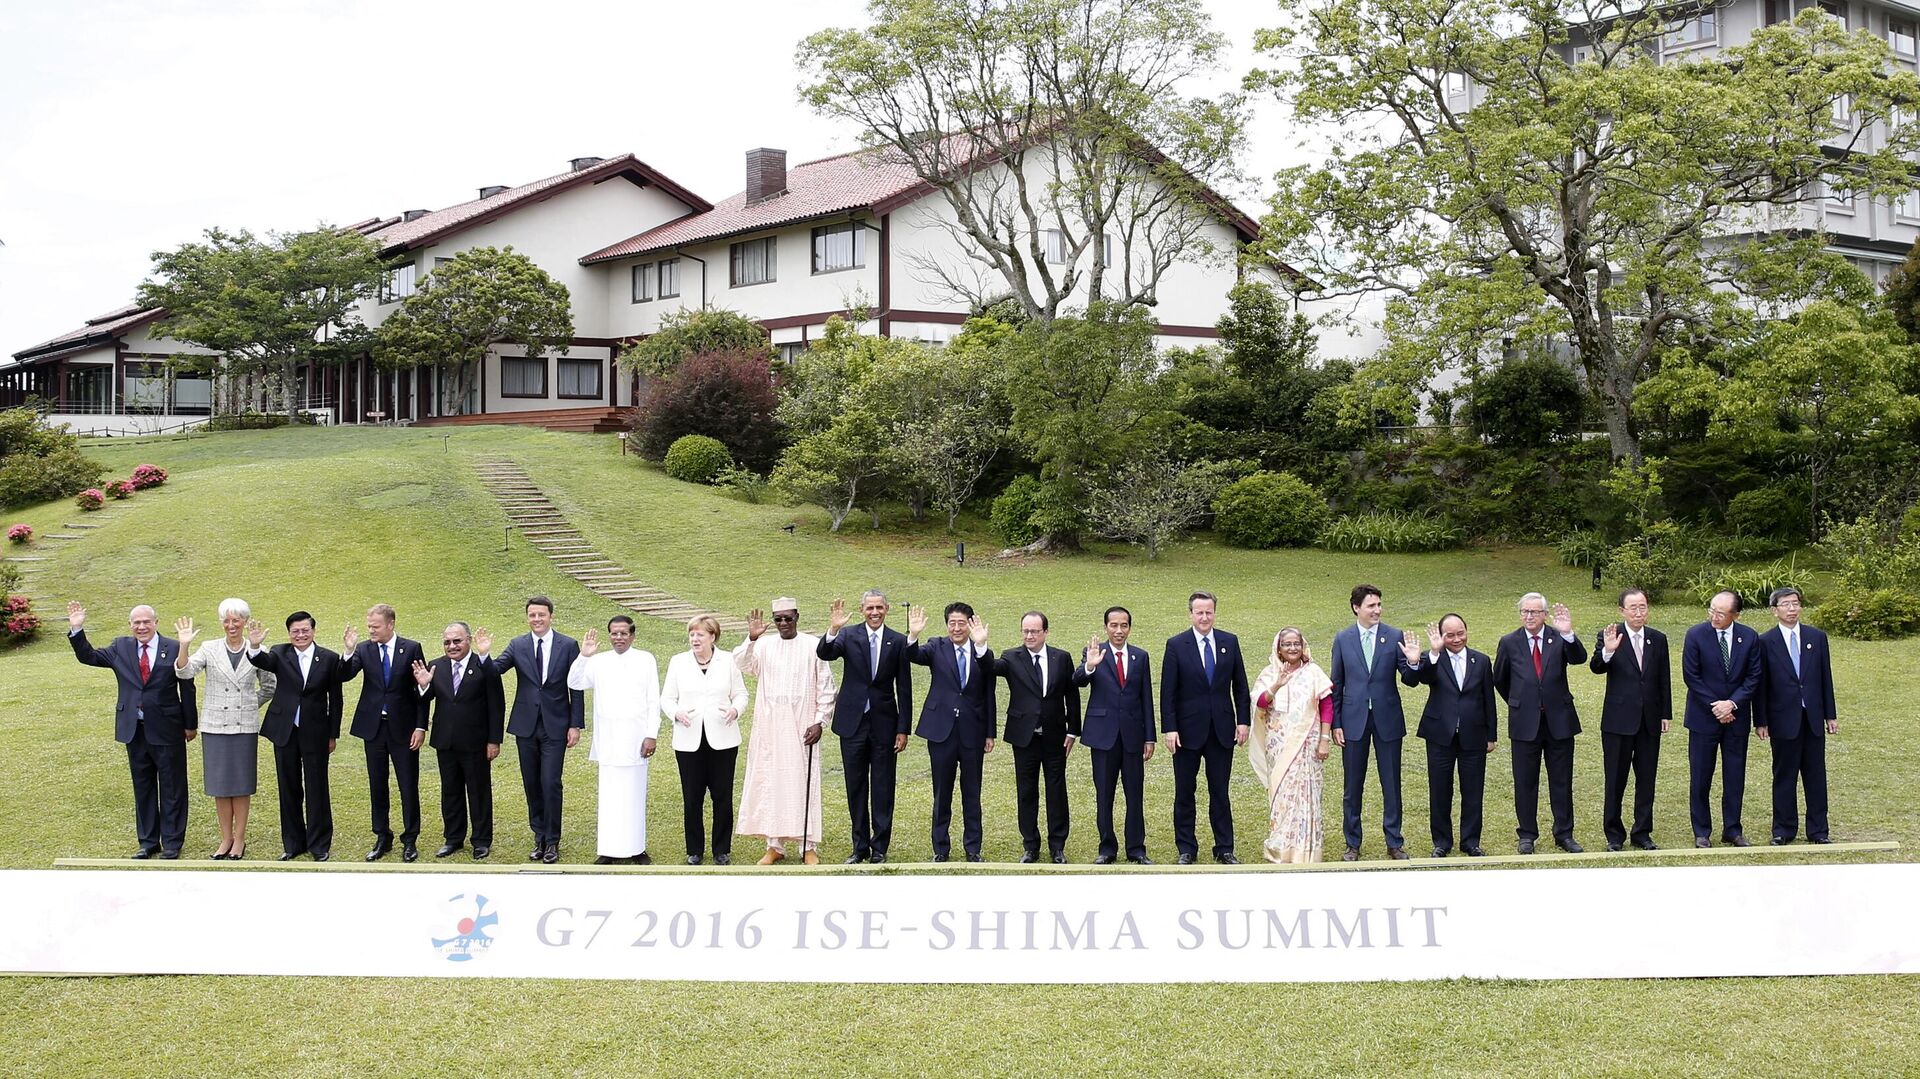 Các nhà lãnh đạo G7 chụp ảnh chung với đại diện các nước đang phát triển ở châu Á và châu Phi tại hội nghị thượng đỉnh G7 ở Nhật Bản, năm 2016 - Sputnik Việt Nam, 1920, 24.03.2023